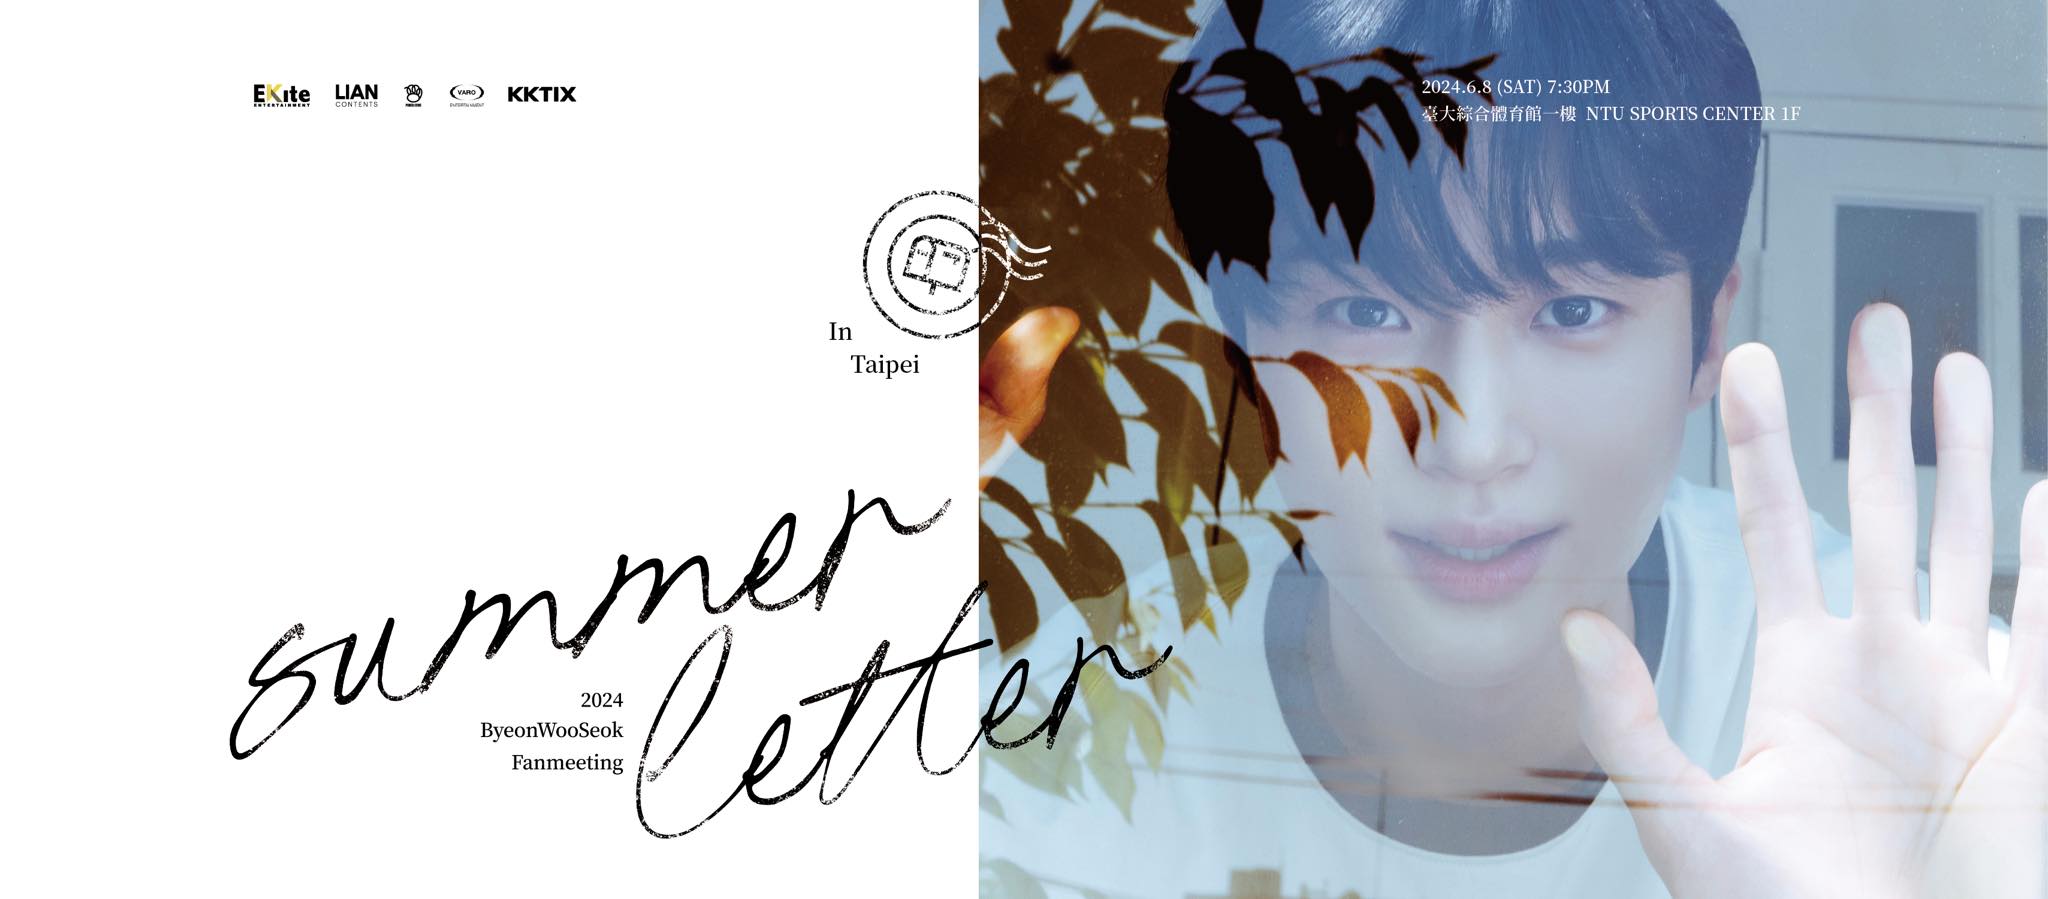 邊佑錫台北見面會2024｜2024 Byeon Woo Seok Fanmeeting 「Summer Letter」 In Taipei｜台大綜合體育館